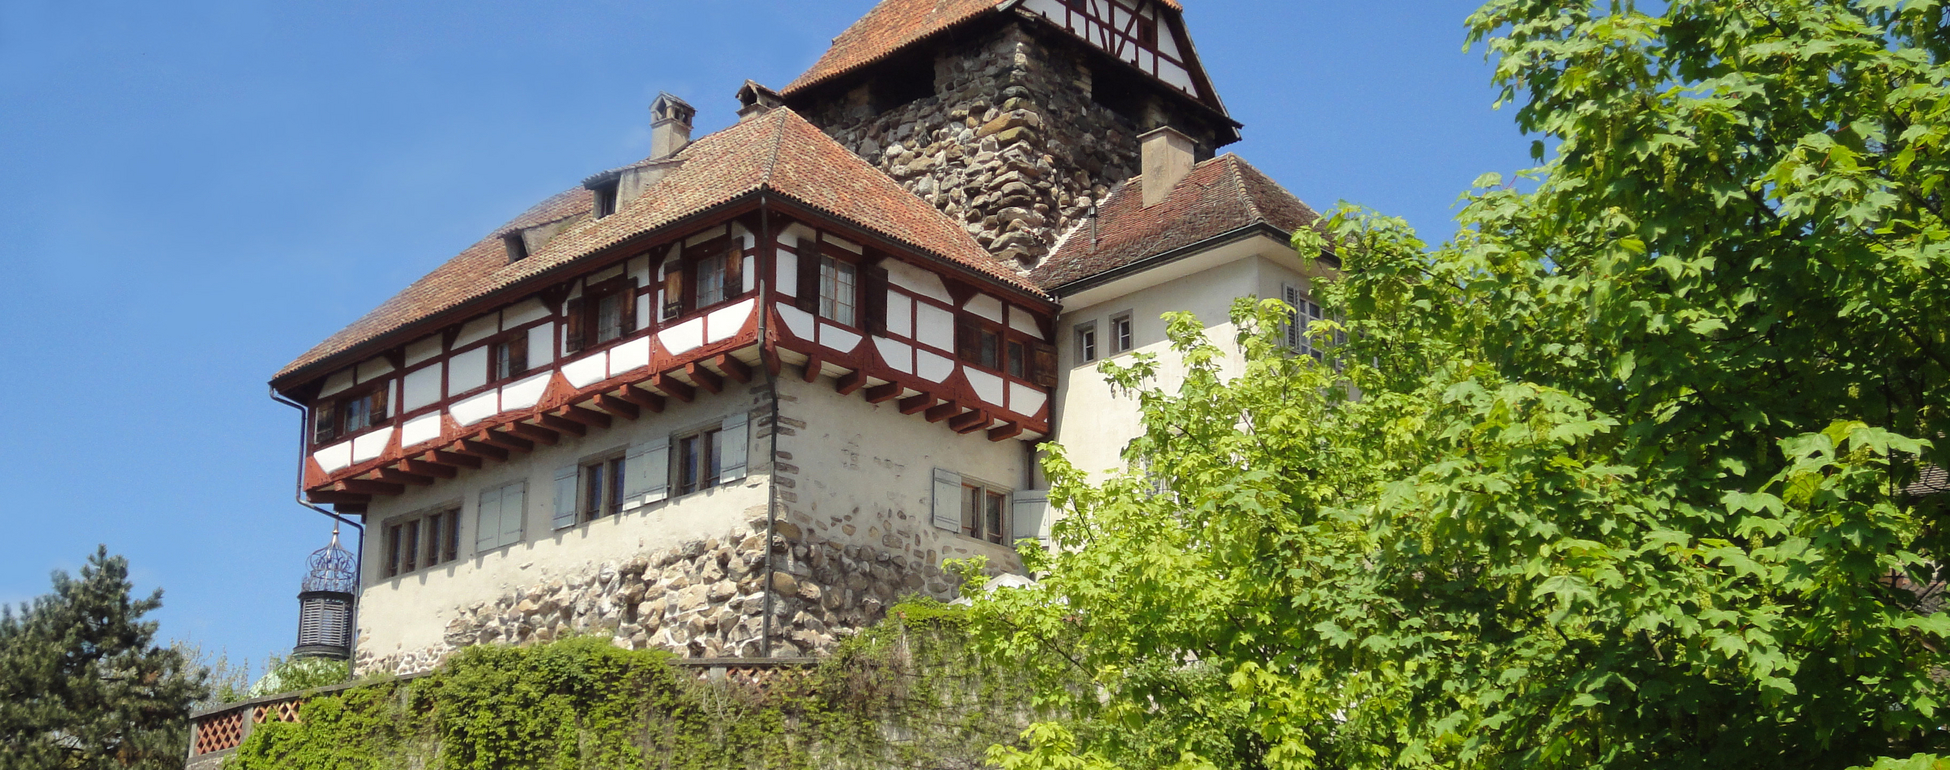 Castello di Frauenfeld